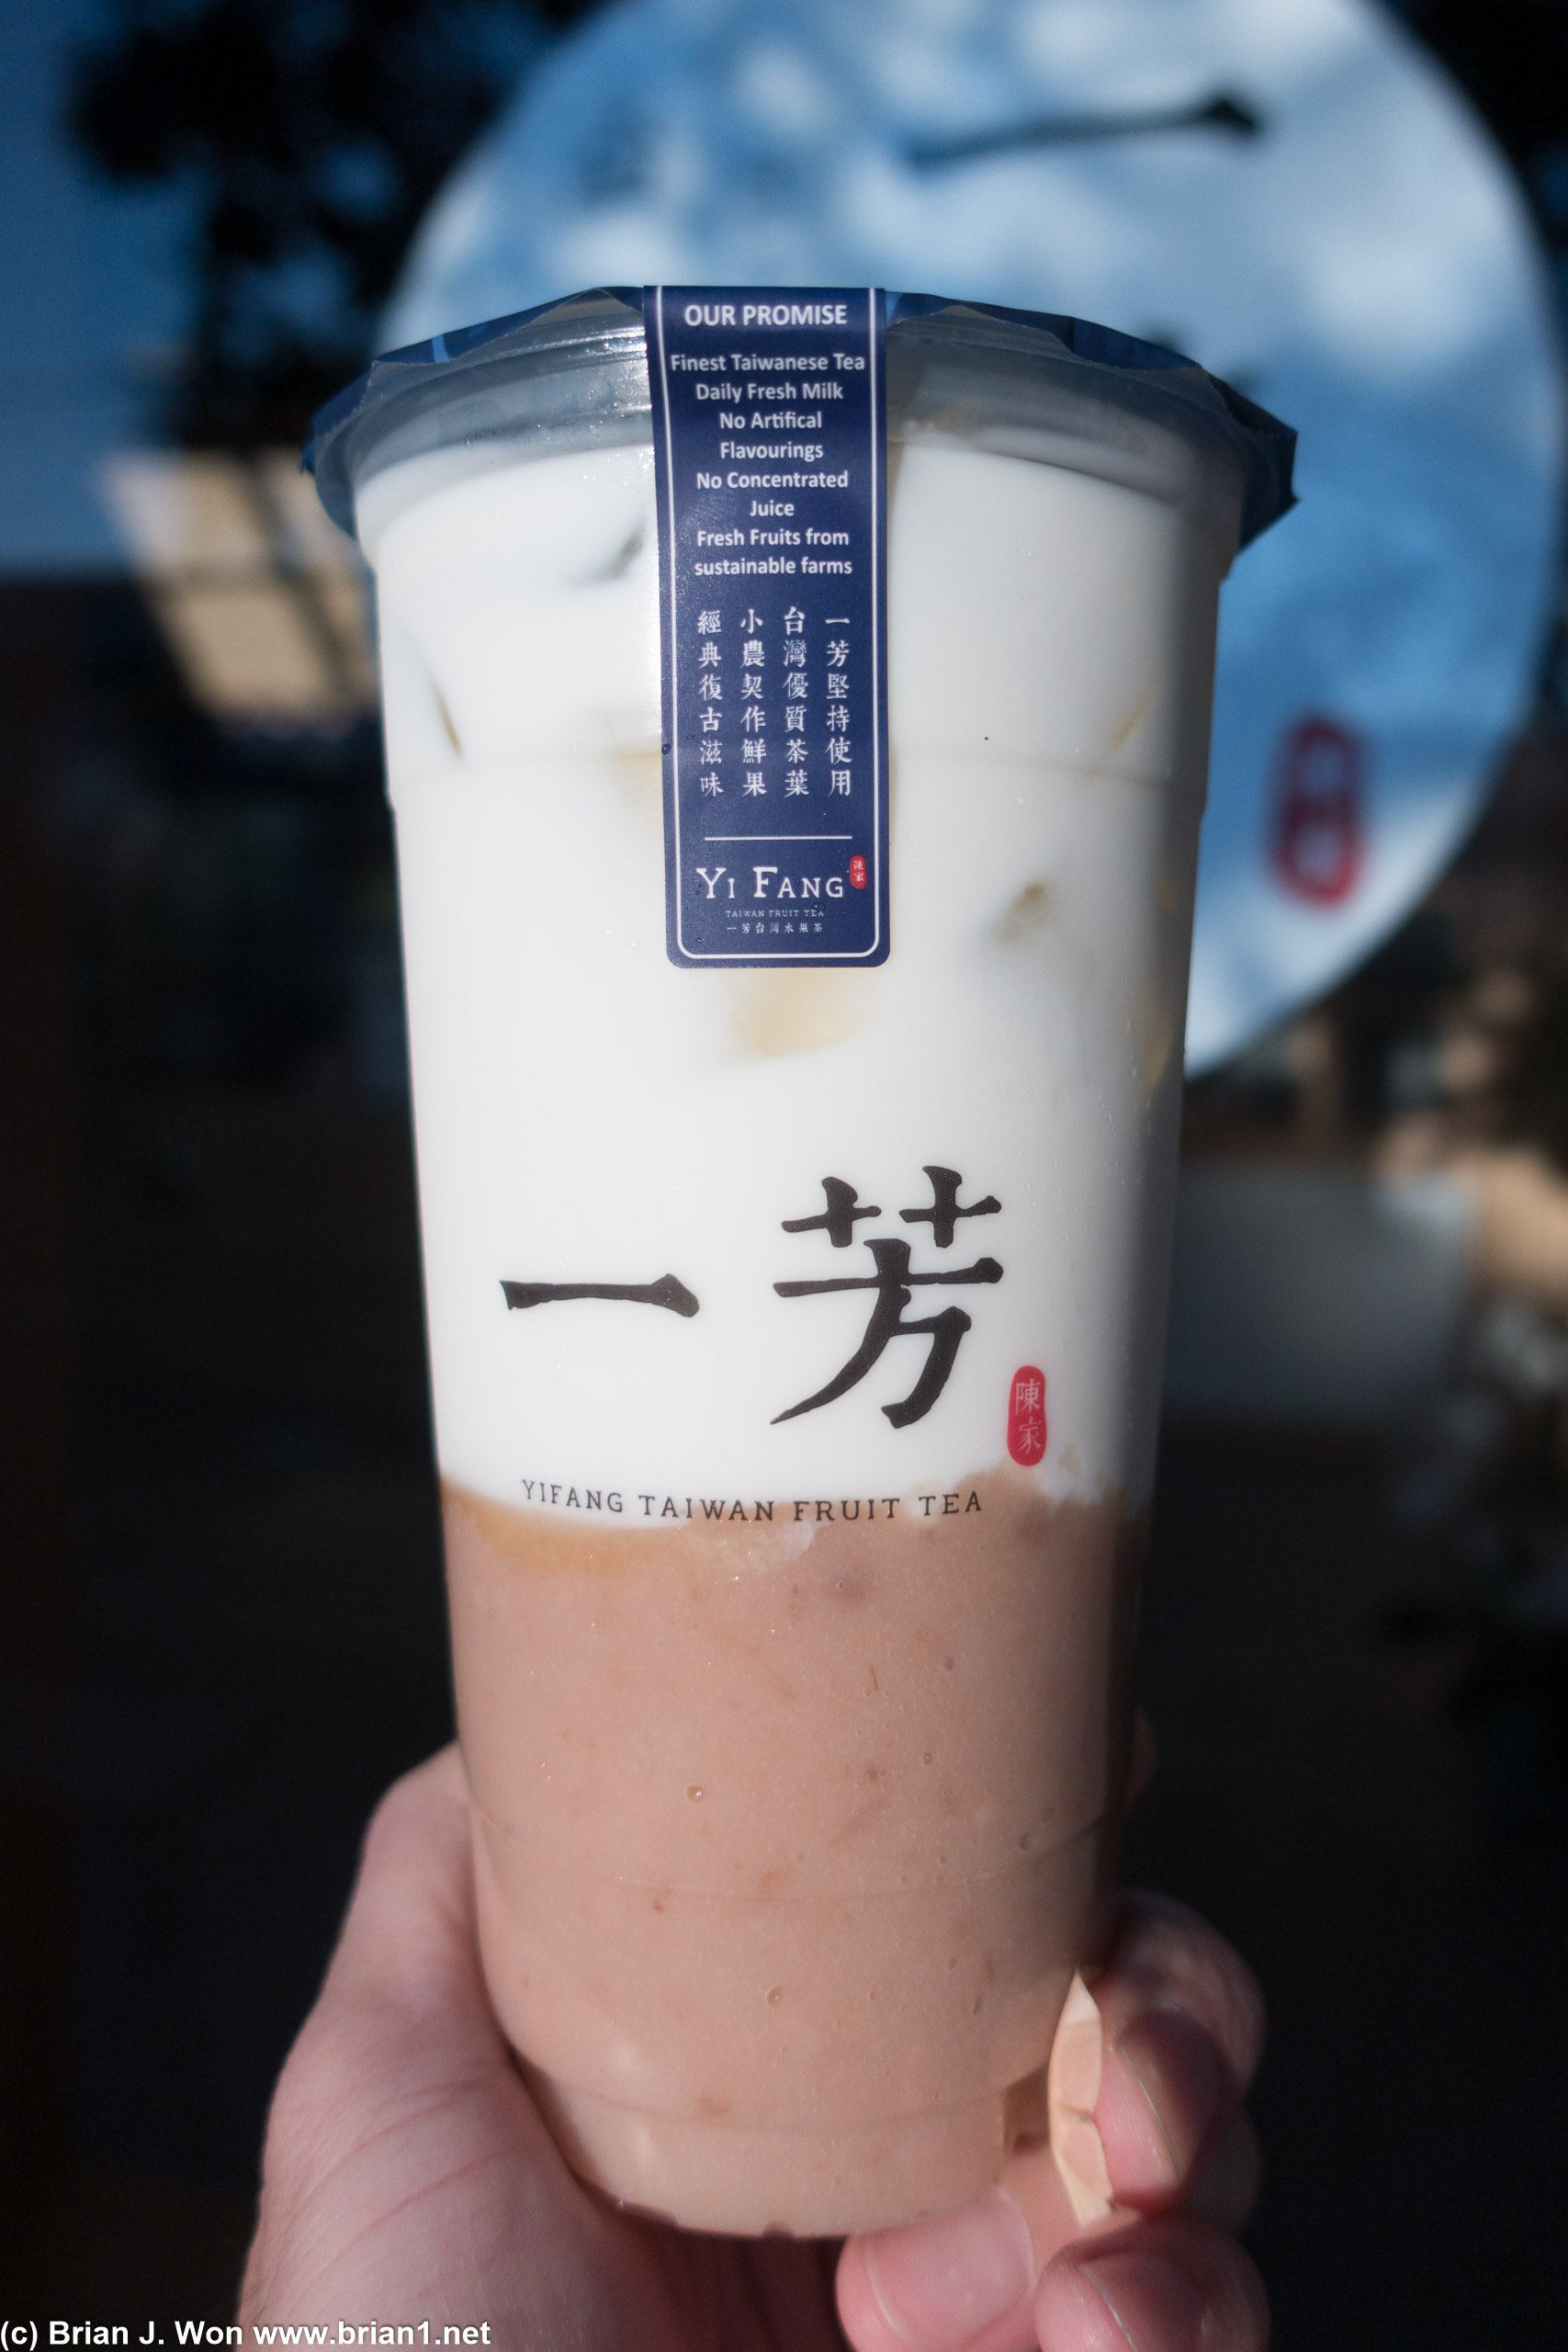 Taro milk "latte" (no caffeine, no tea, no coffee) from Yifang Taiwan Fruit Tea.